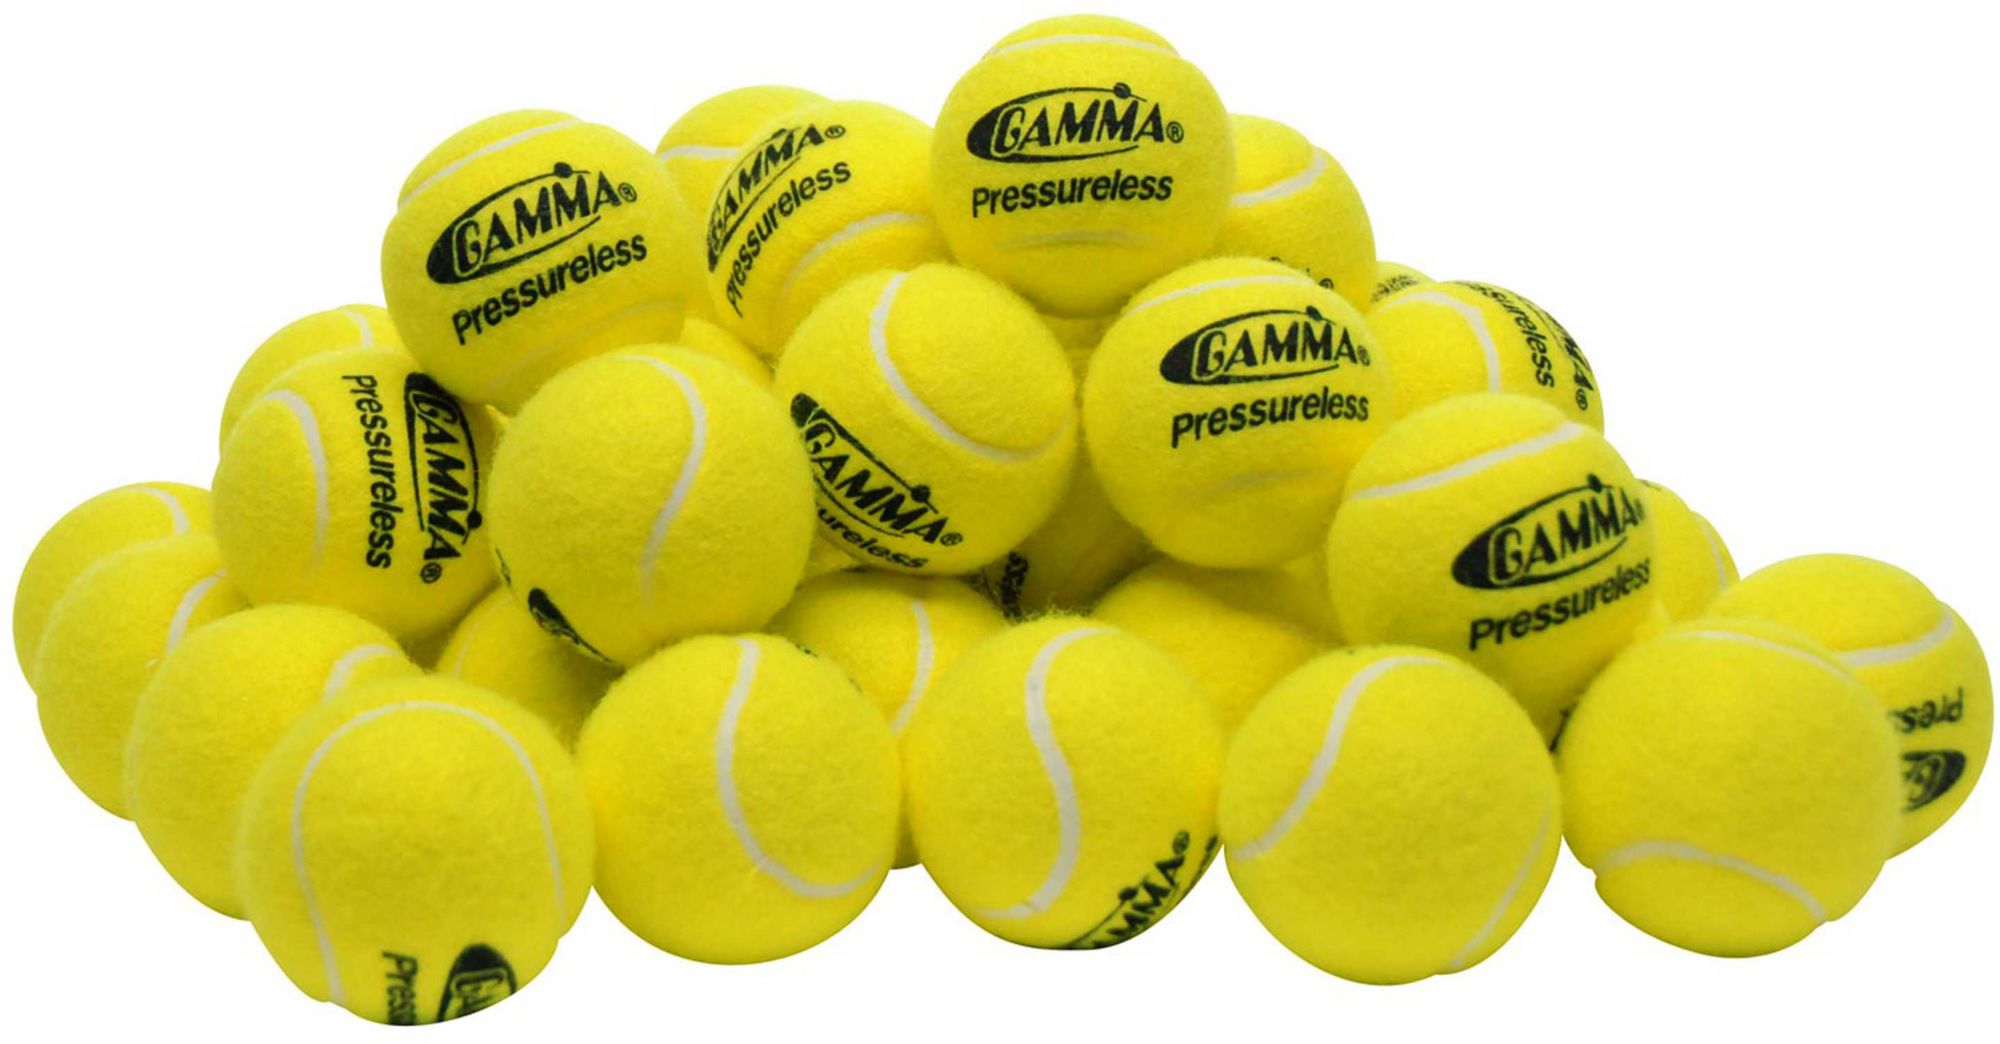 Tennis ball photo